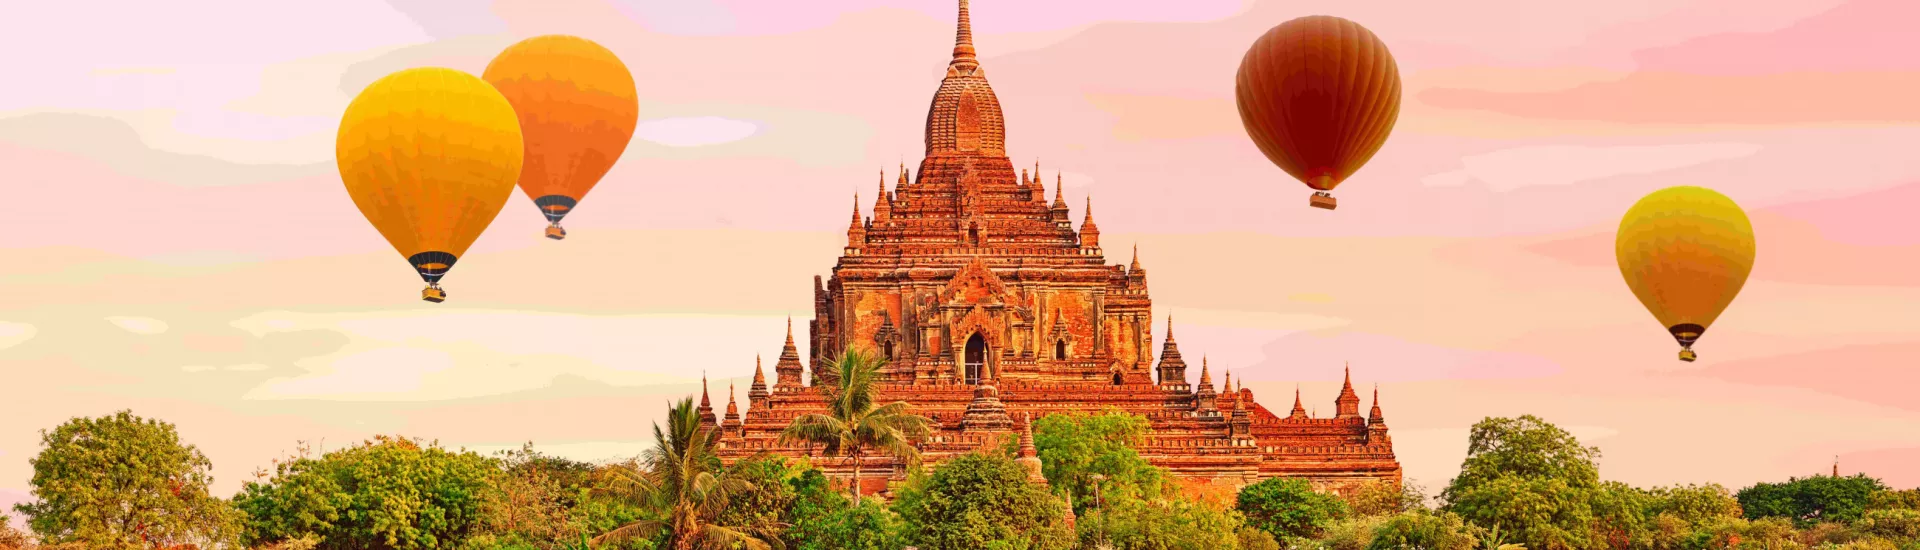 Htilominlo Temple in Bagan,Myanmar